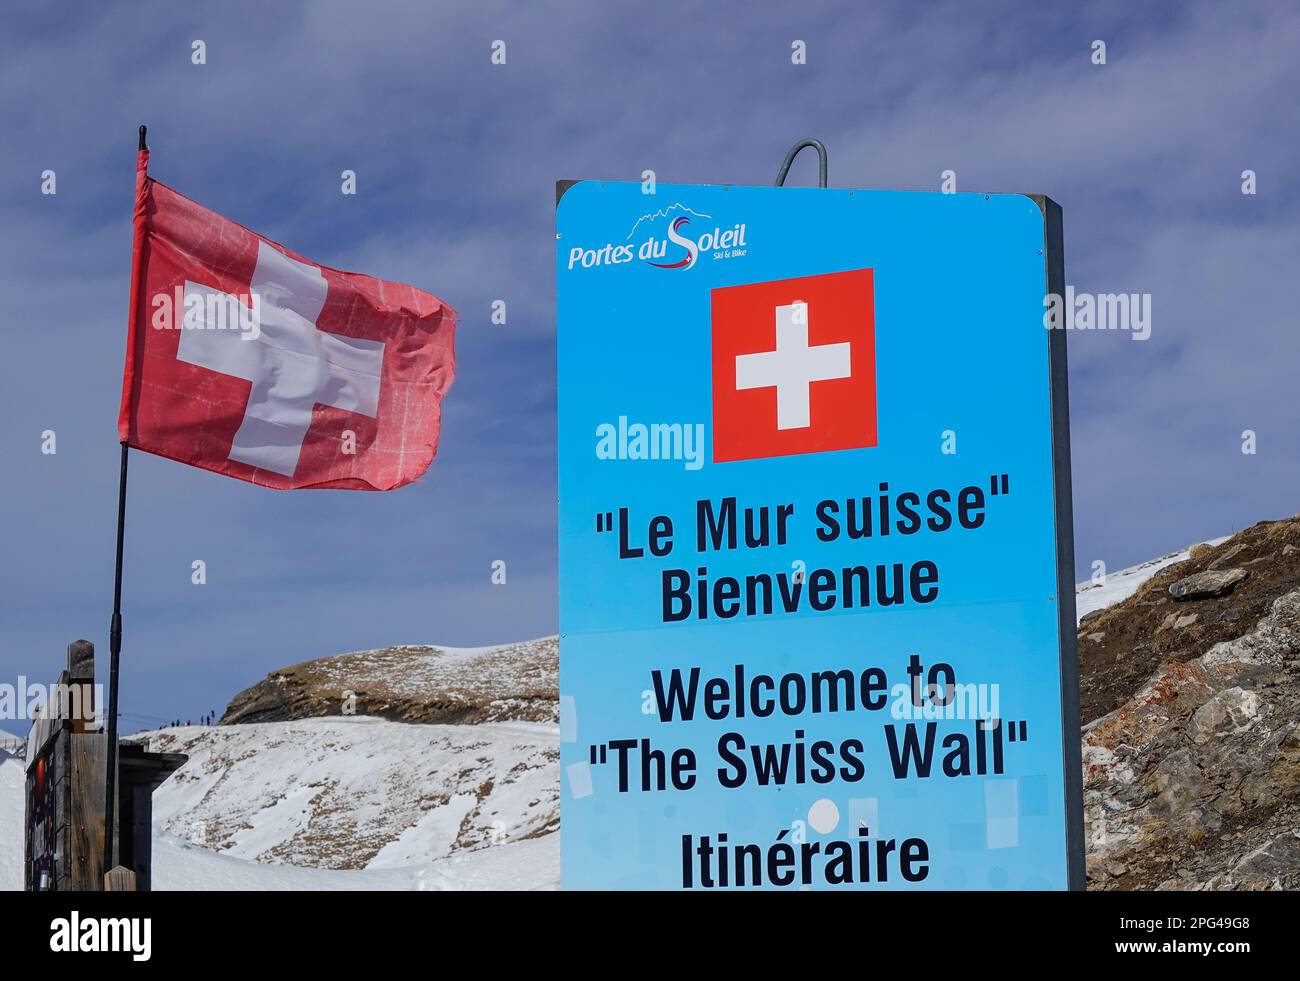 Schweizer Wand, Le Mur Suisse, Les Portes du Soleil, Wallis, Schweiz Stock Photo